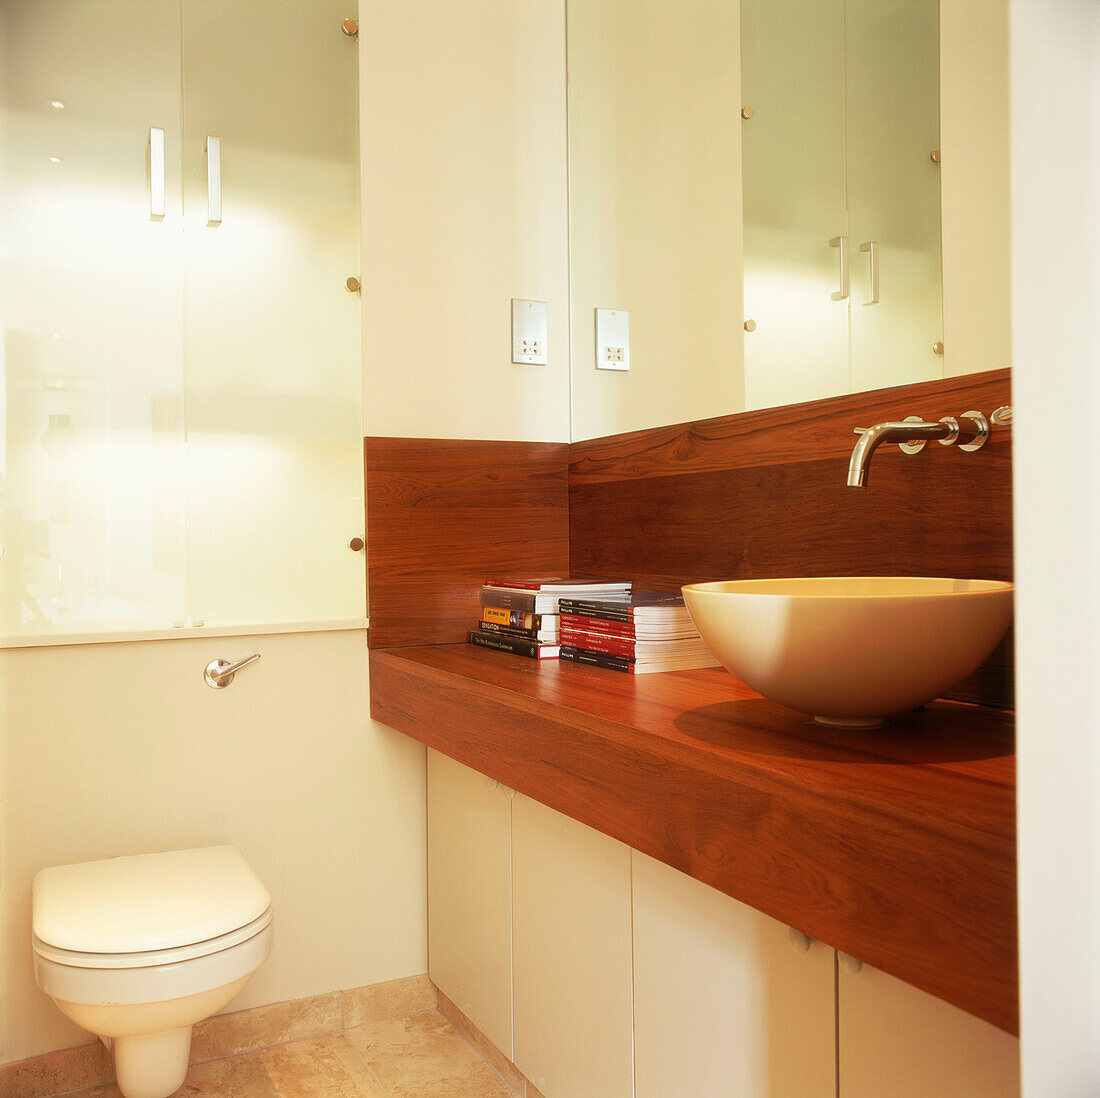 Modernes Badezimmer mit Steinwaschbecken auf Holzarbeitsplatte